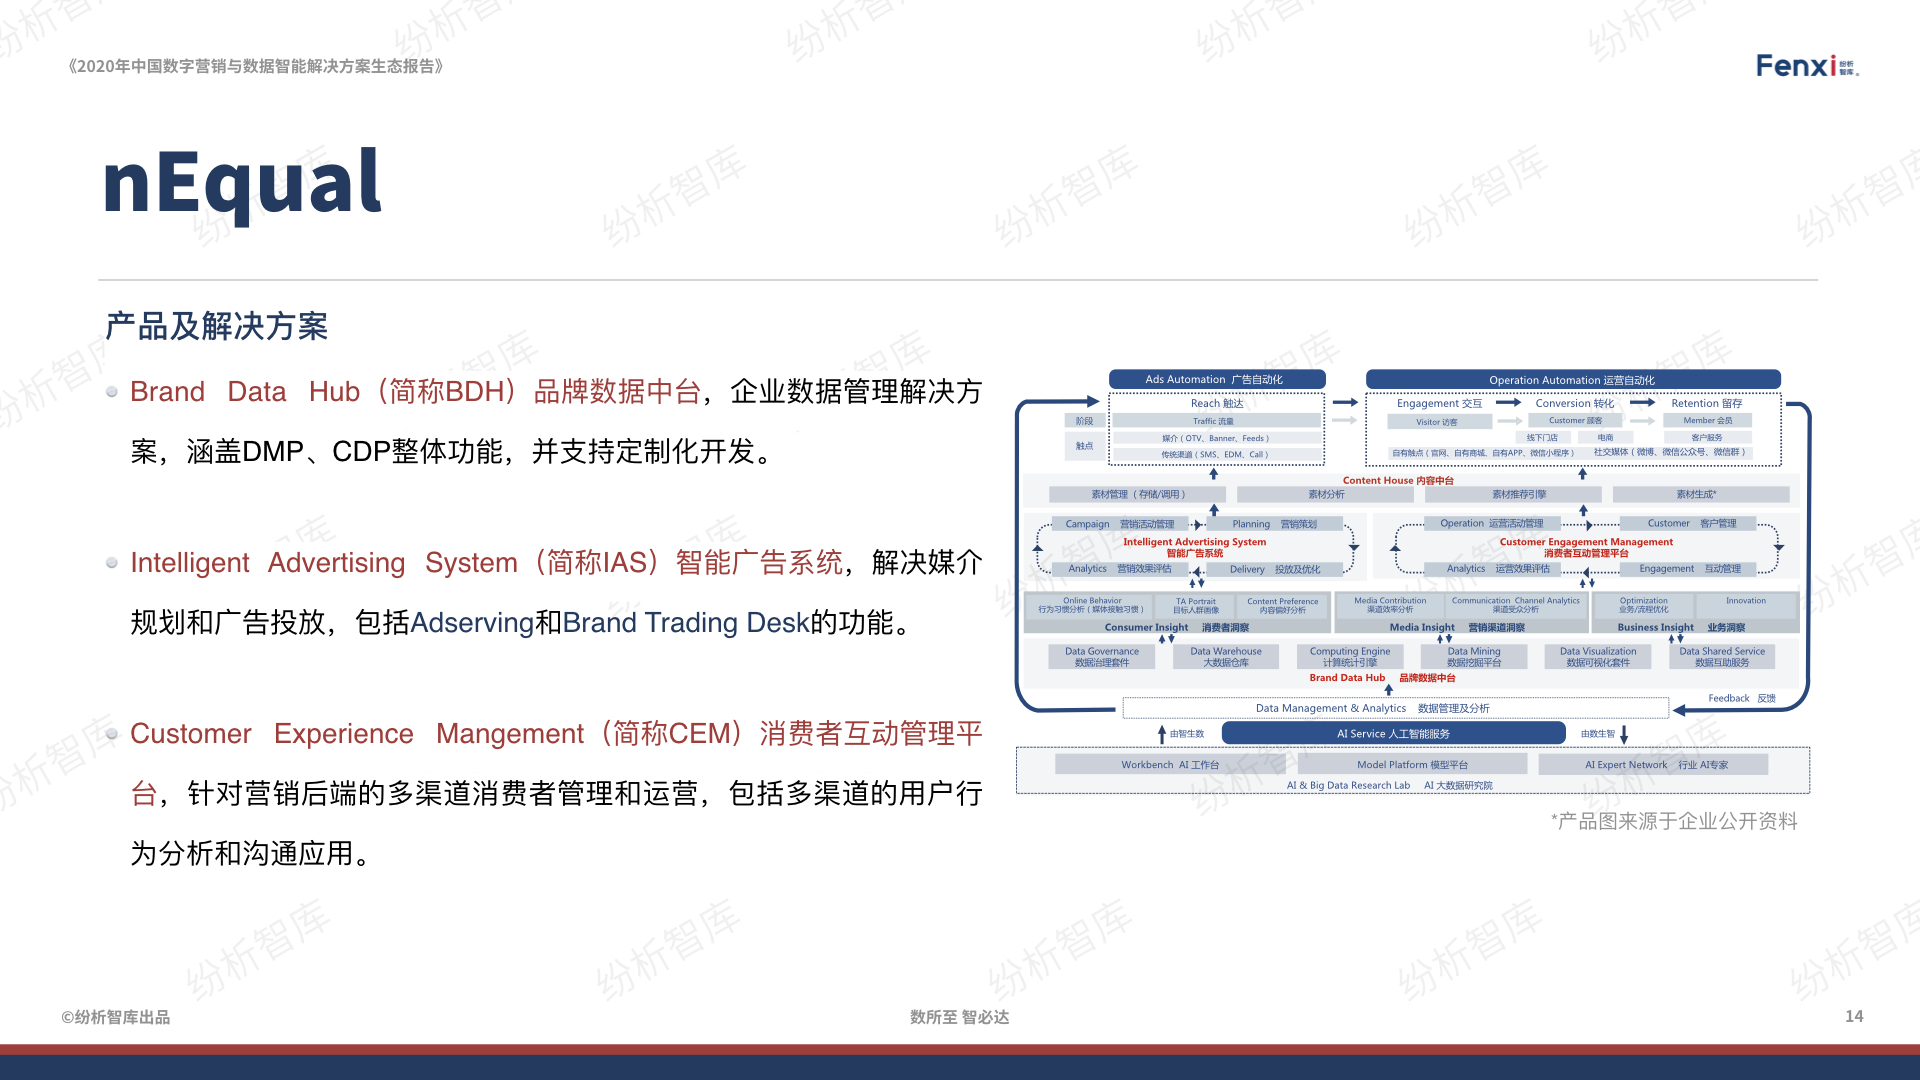 【V8】《2020年中国数字营销与数据智能解决方案生态图报告》0106.014.jpeg